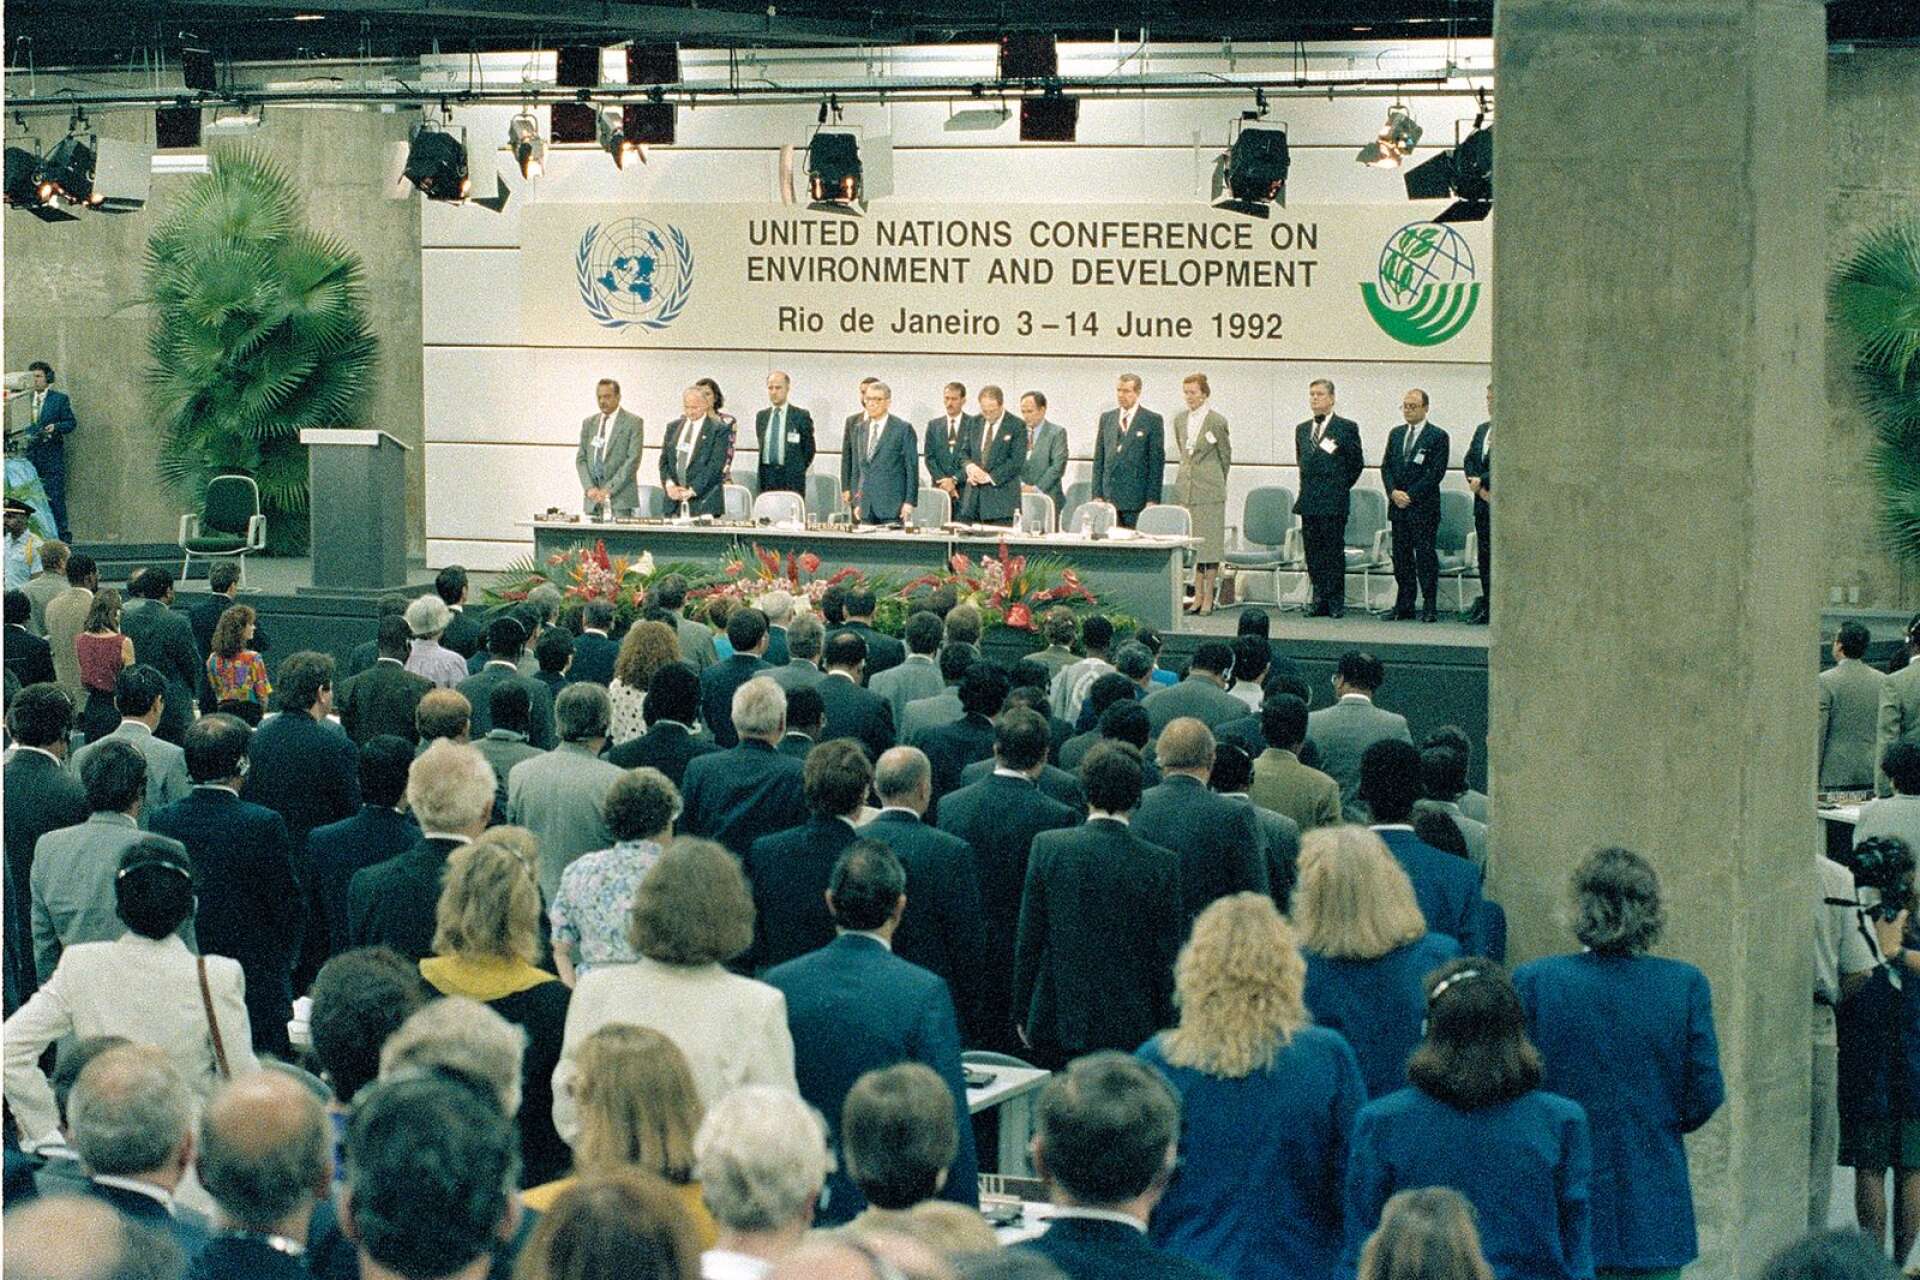 Både Helén Williams och Fredrik Wikström började intressera sig för klimatet i samband med FN:s toppmöte i Rio de Janeiro 1992.